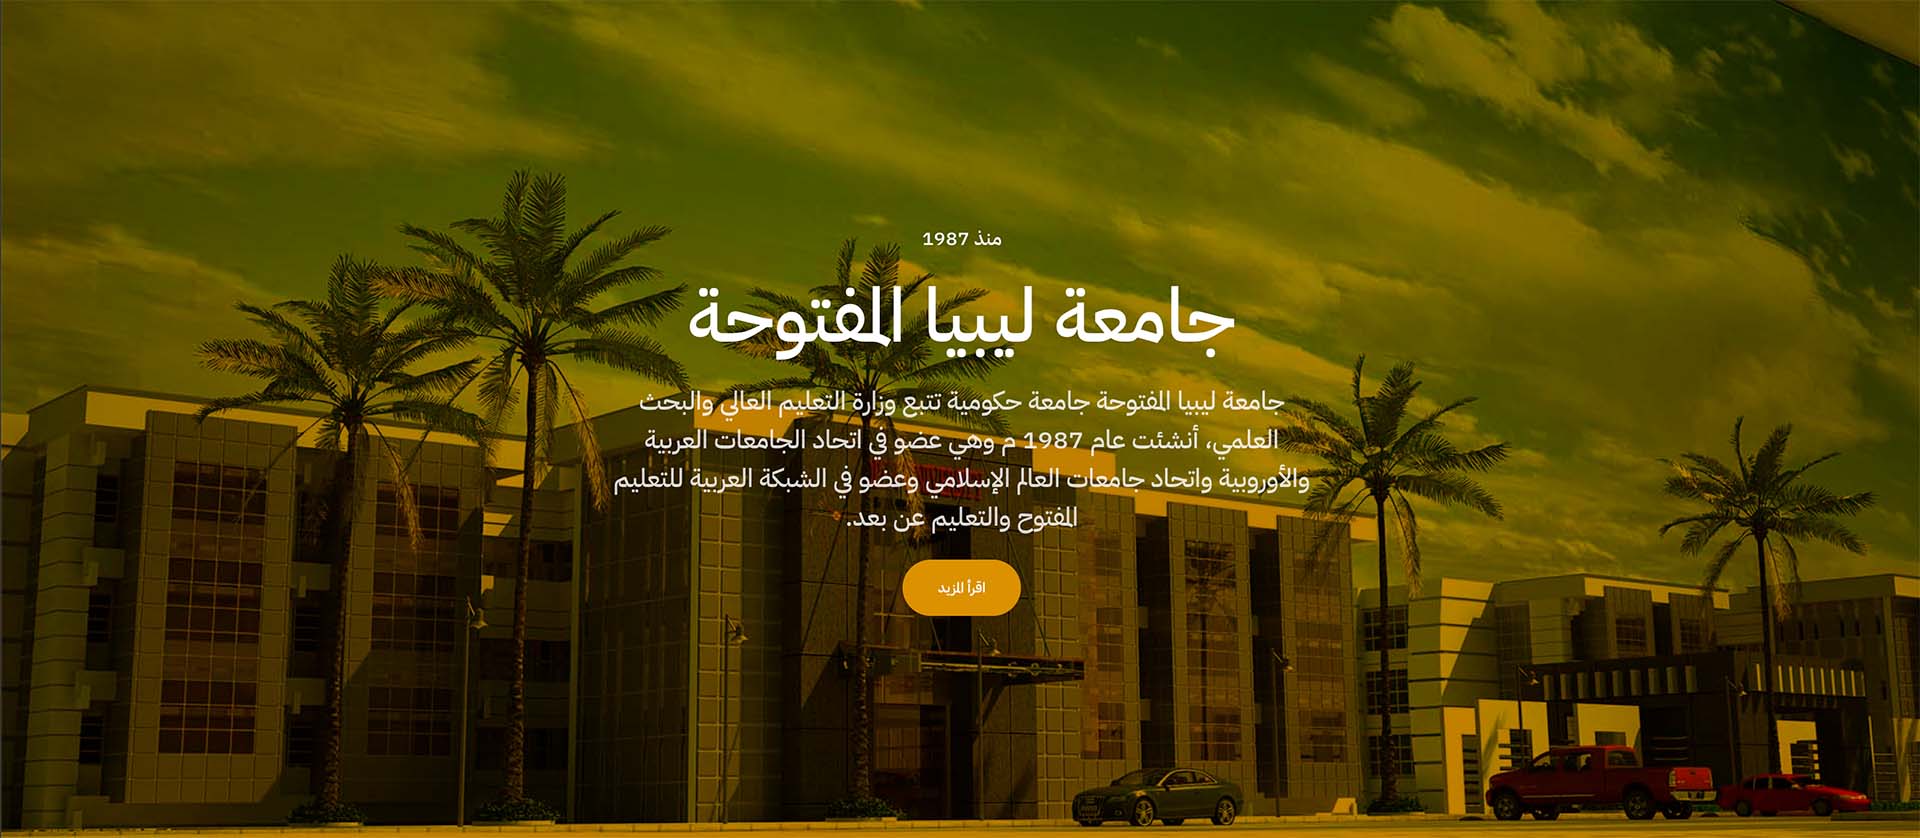 اختيار جامعة  ليبيا المفتوحة عضواً في مجلس إدارة مجلس حوكمة الجامعات العربية .